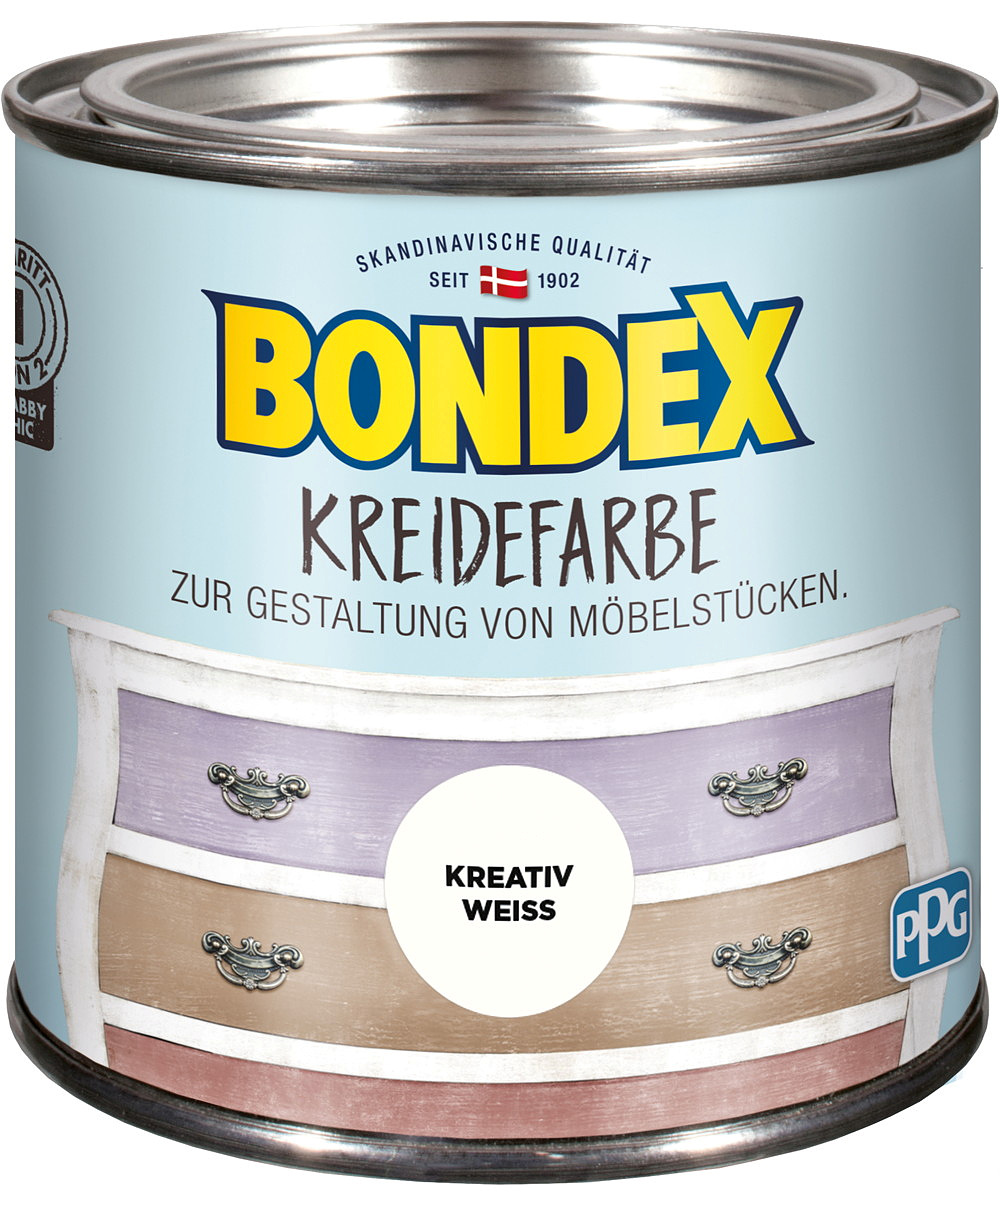 Bondex Kreidefarbe Kreativ Weiss 0,5l